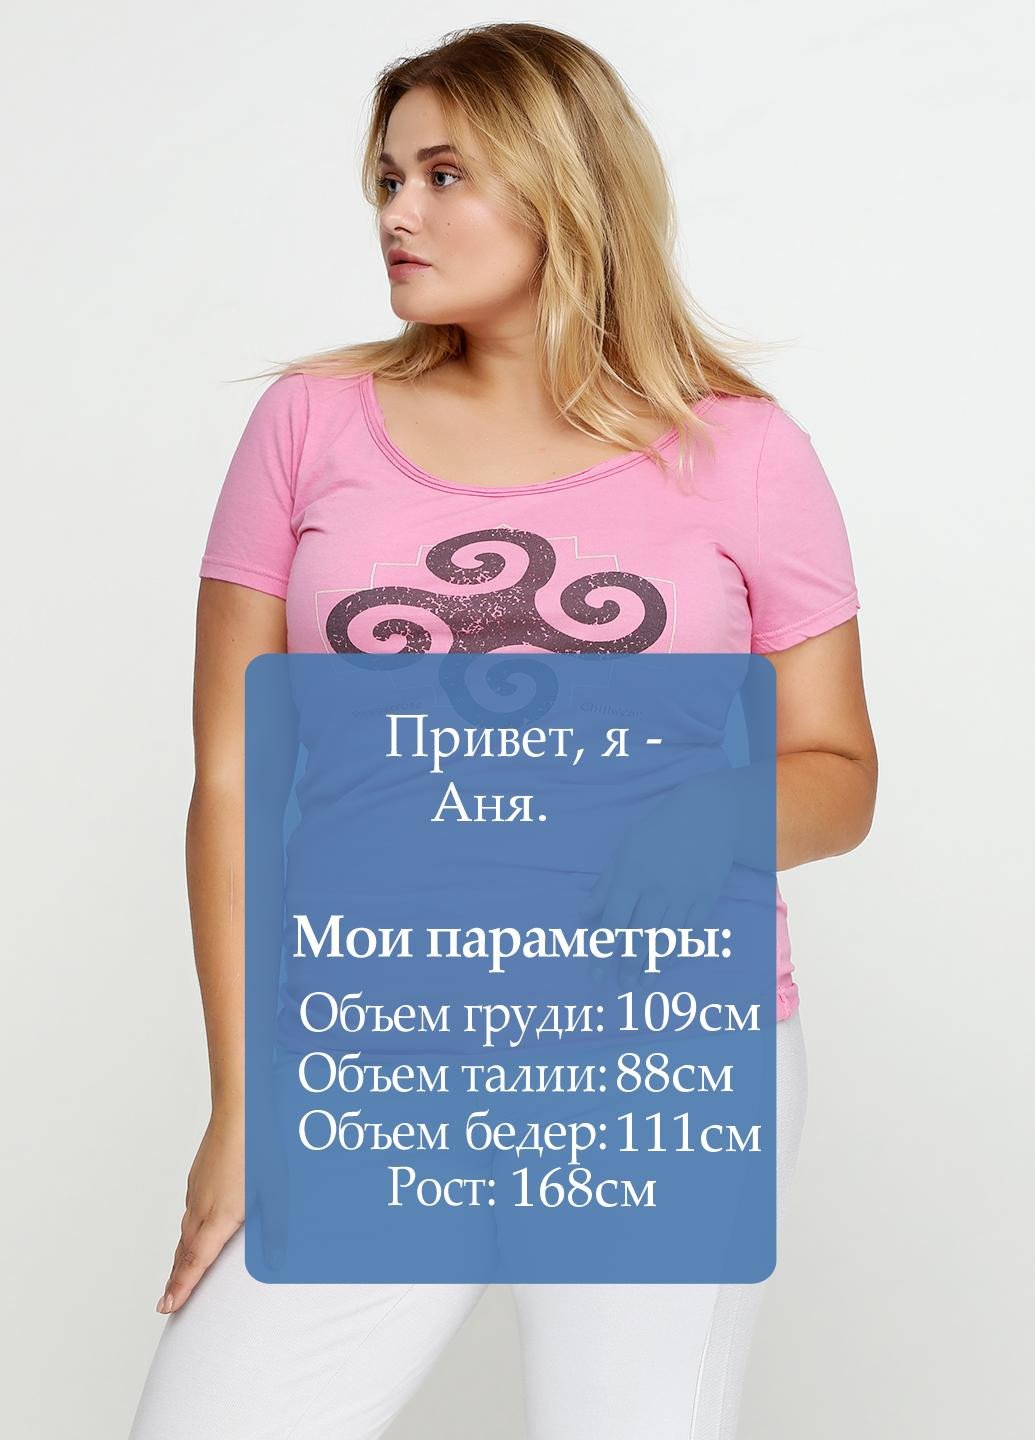 Розовая летняя футболка Pepperrose